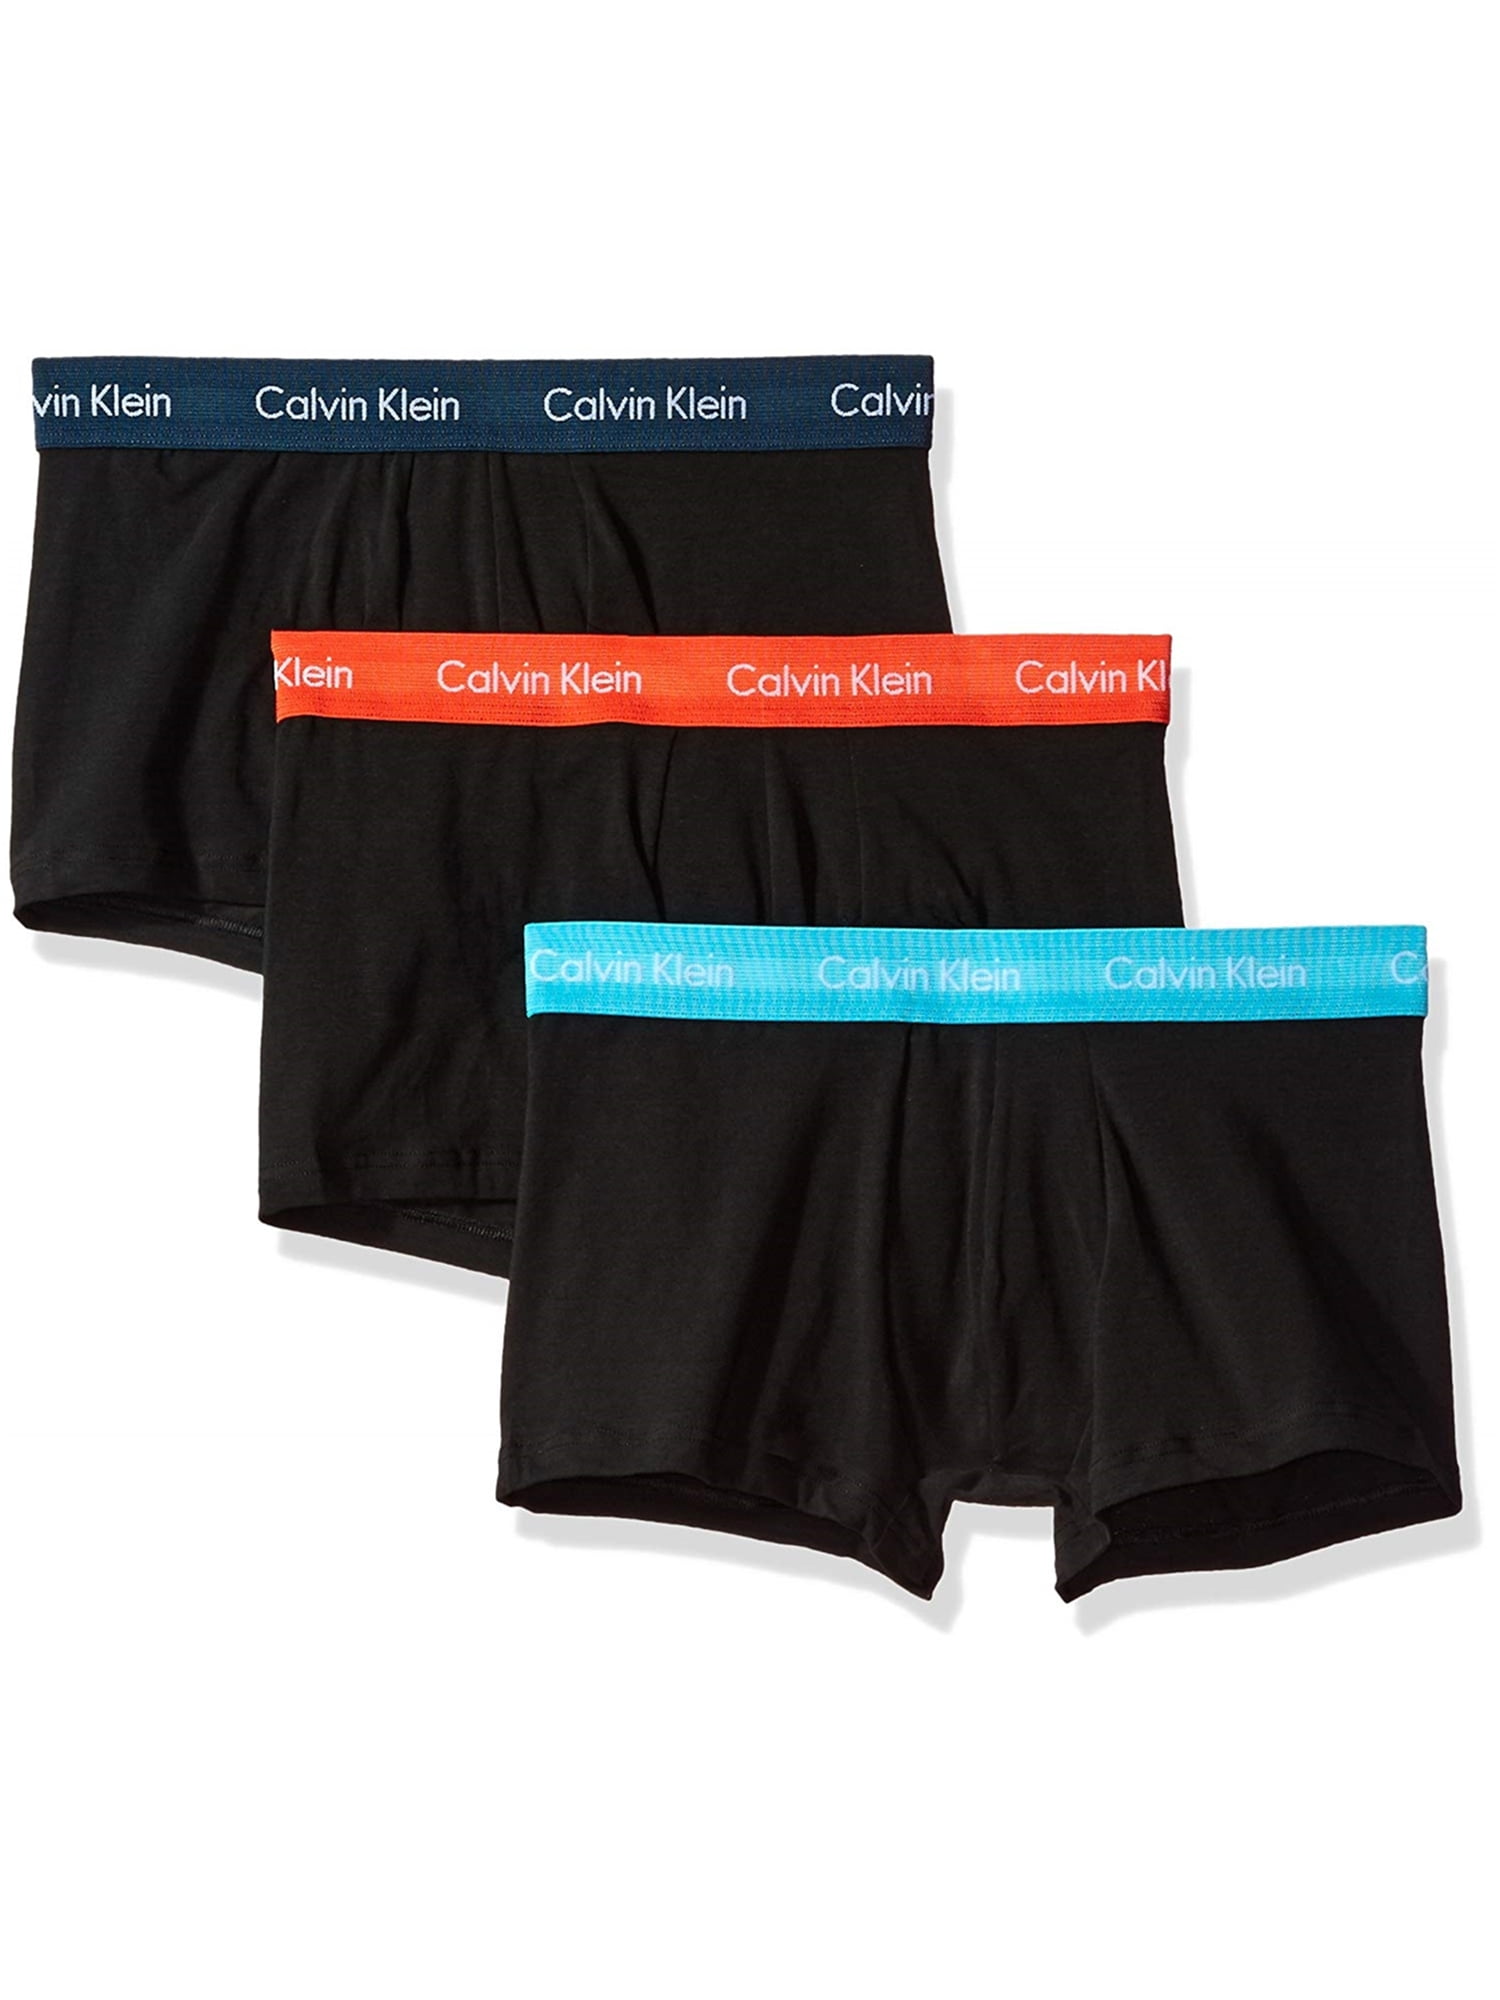 Calvin Klein - Calvin Klein Mens Low-Rise Underwear Boxer Briefs ...